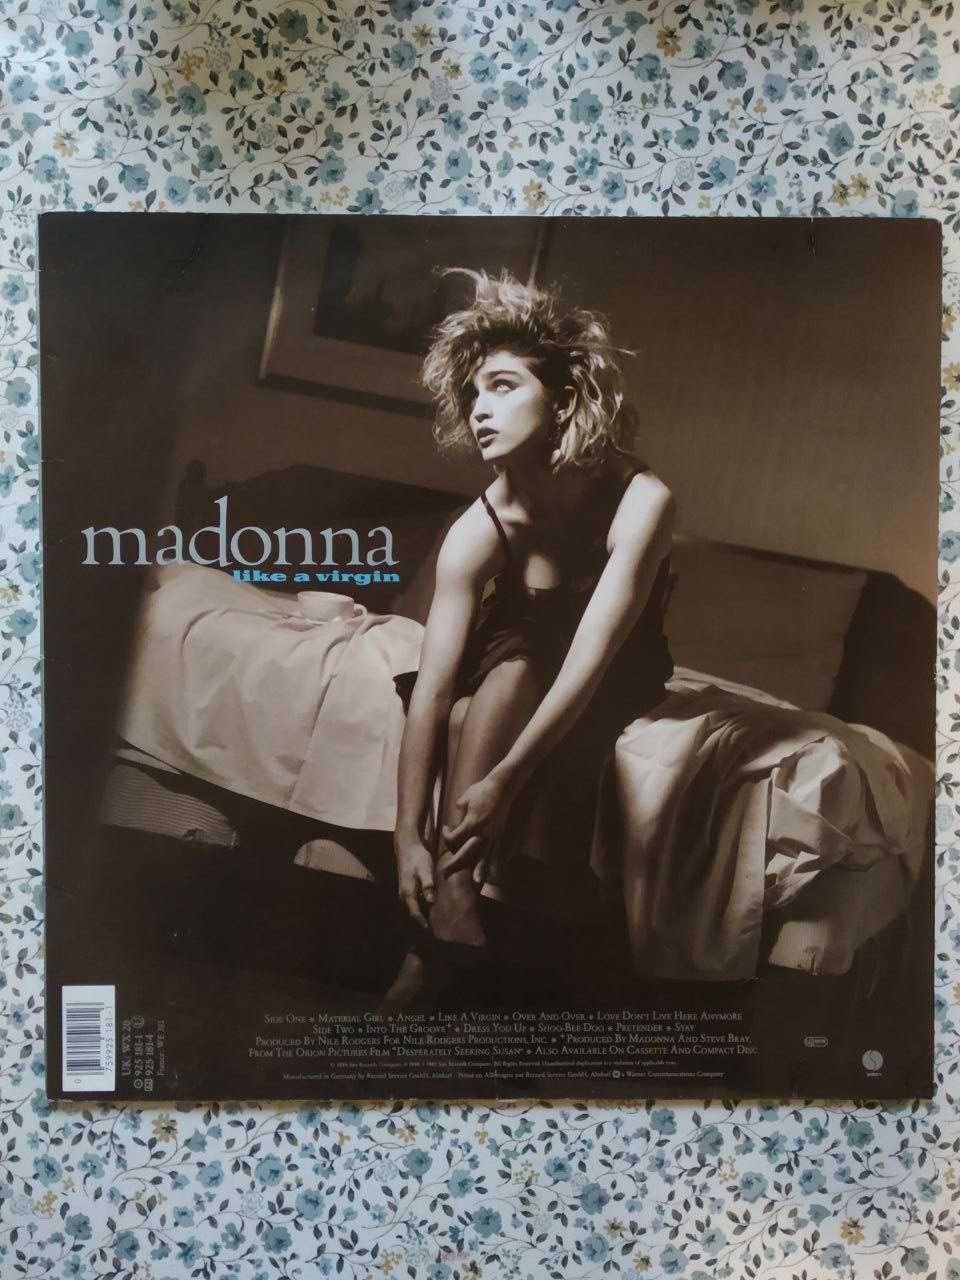 Madonna - Like a Virgin (Germany, OIS)